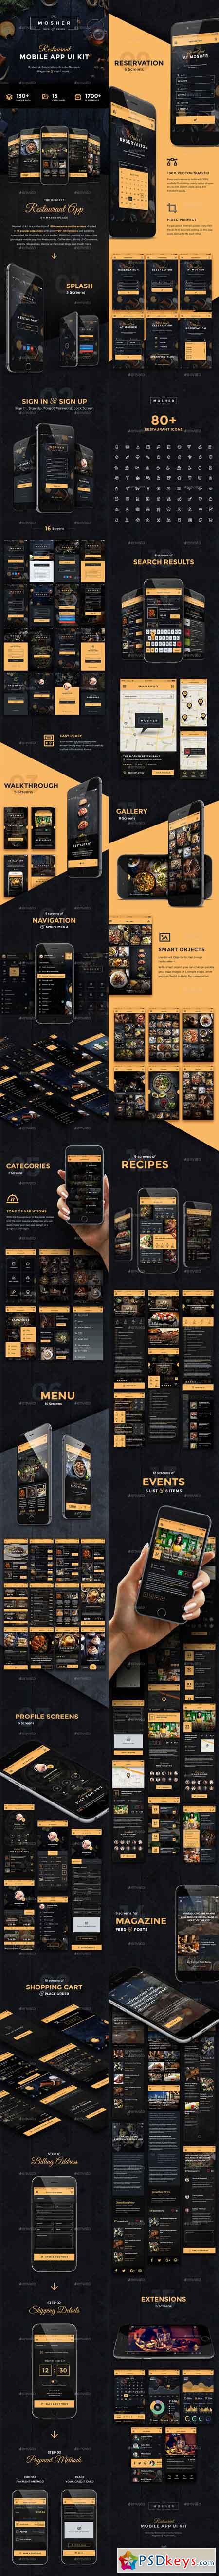 Mosher - Restaurant Mobile App UI Kit 17807658